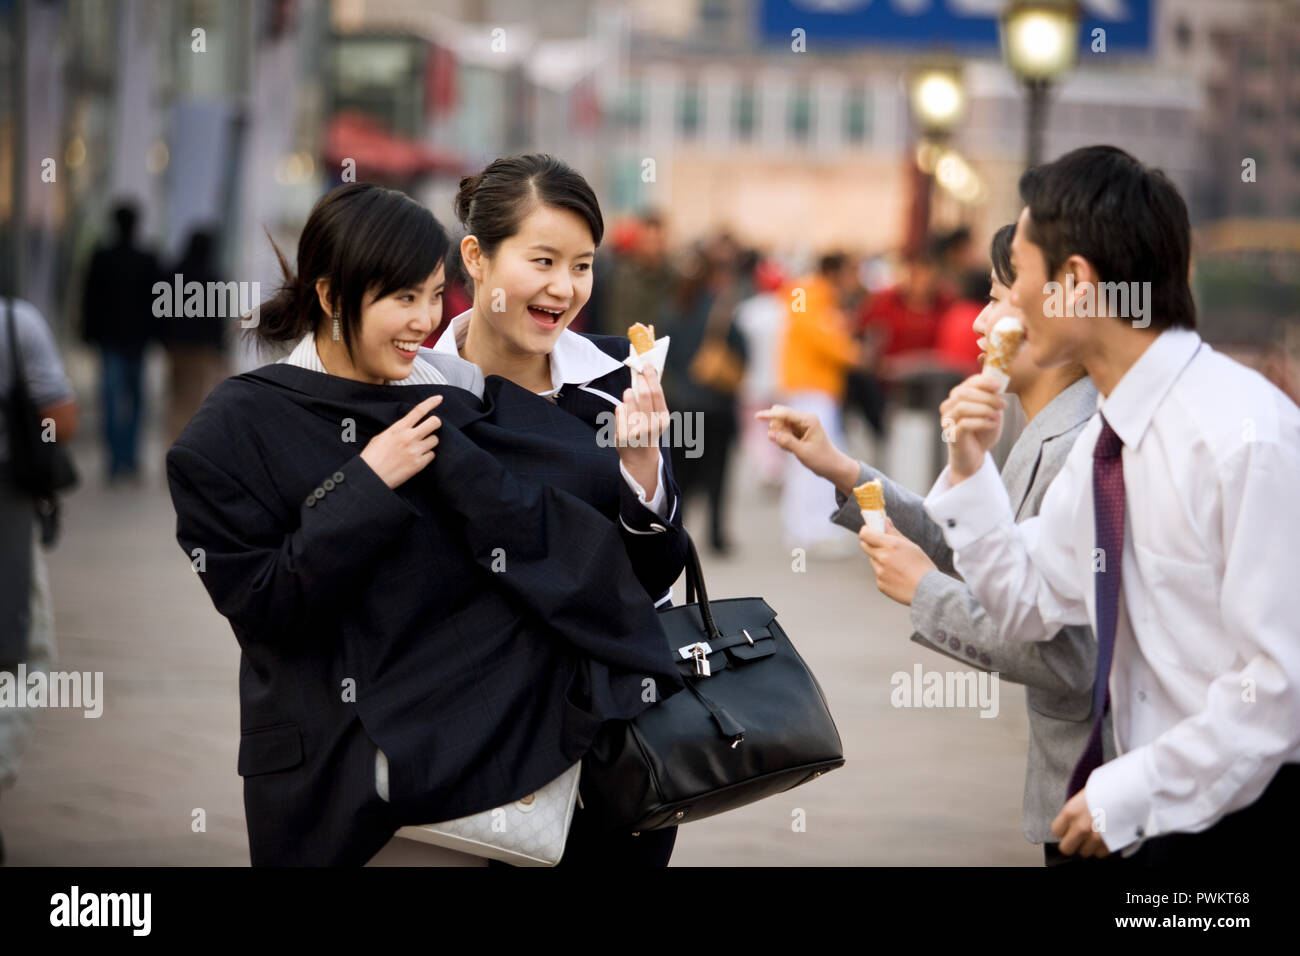 Gruppe von lächelnden jungen Erwachsene holding Eistüten. Stockfoto